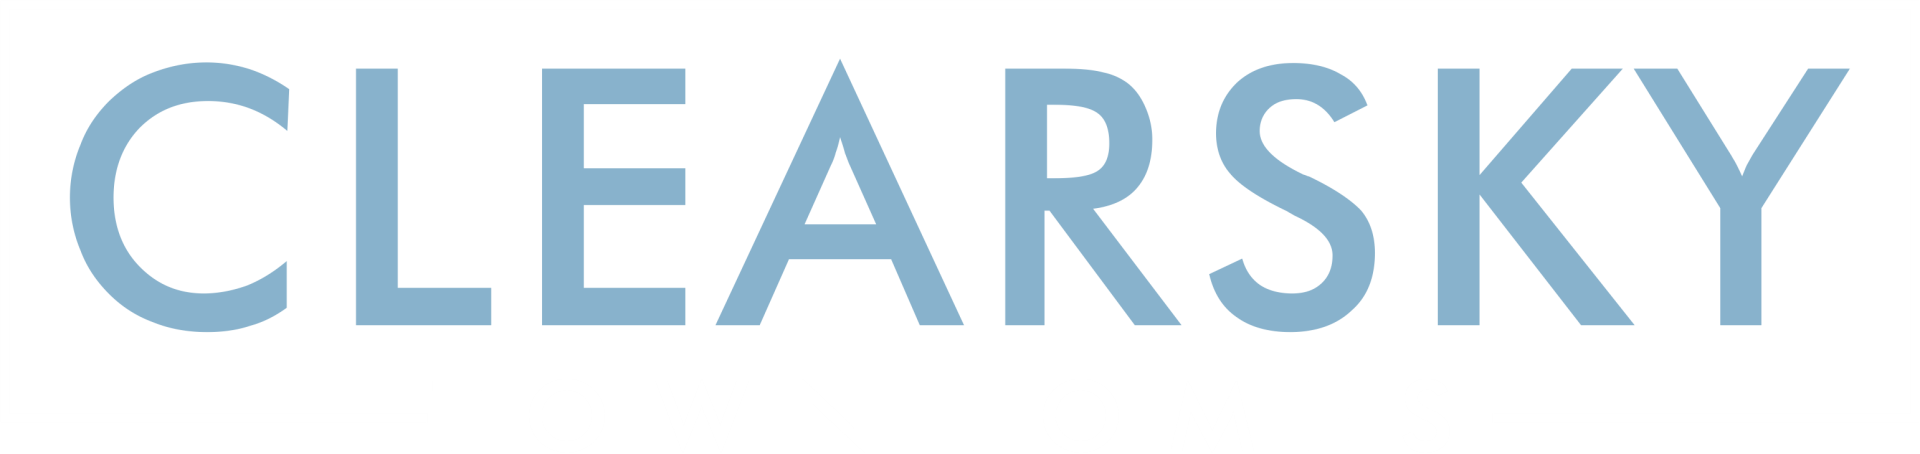 Valor Residential Group Logo